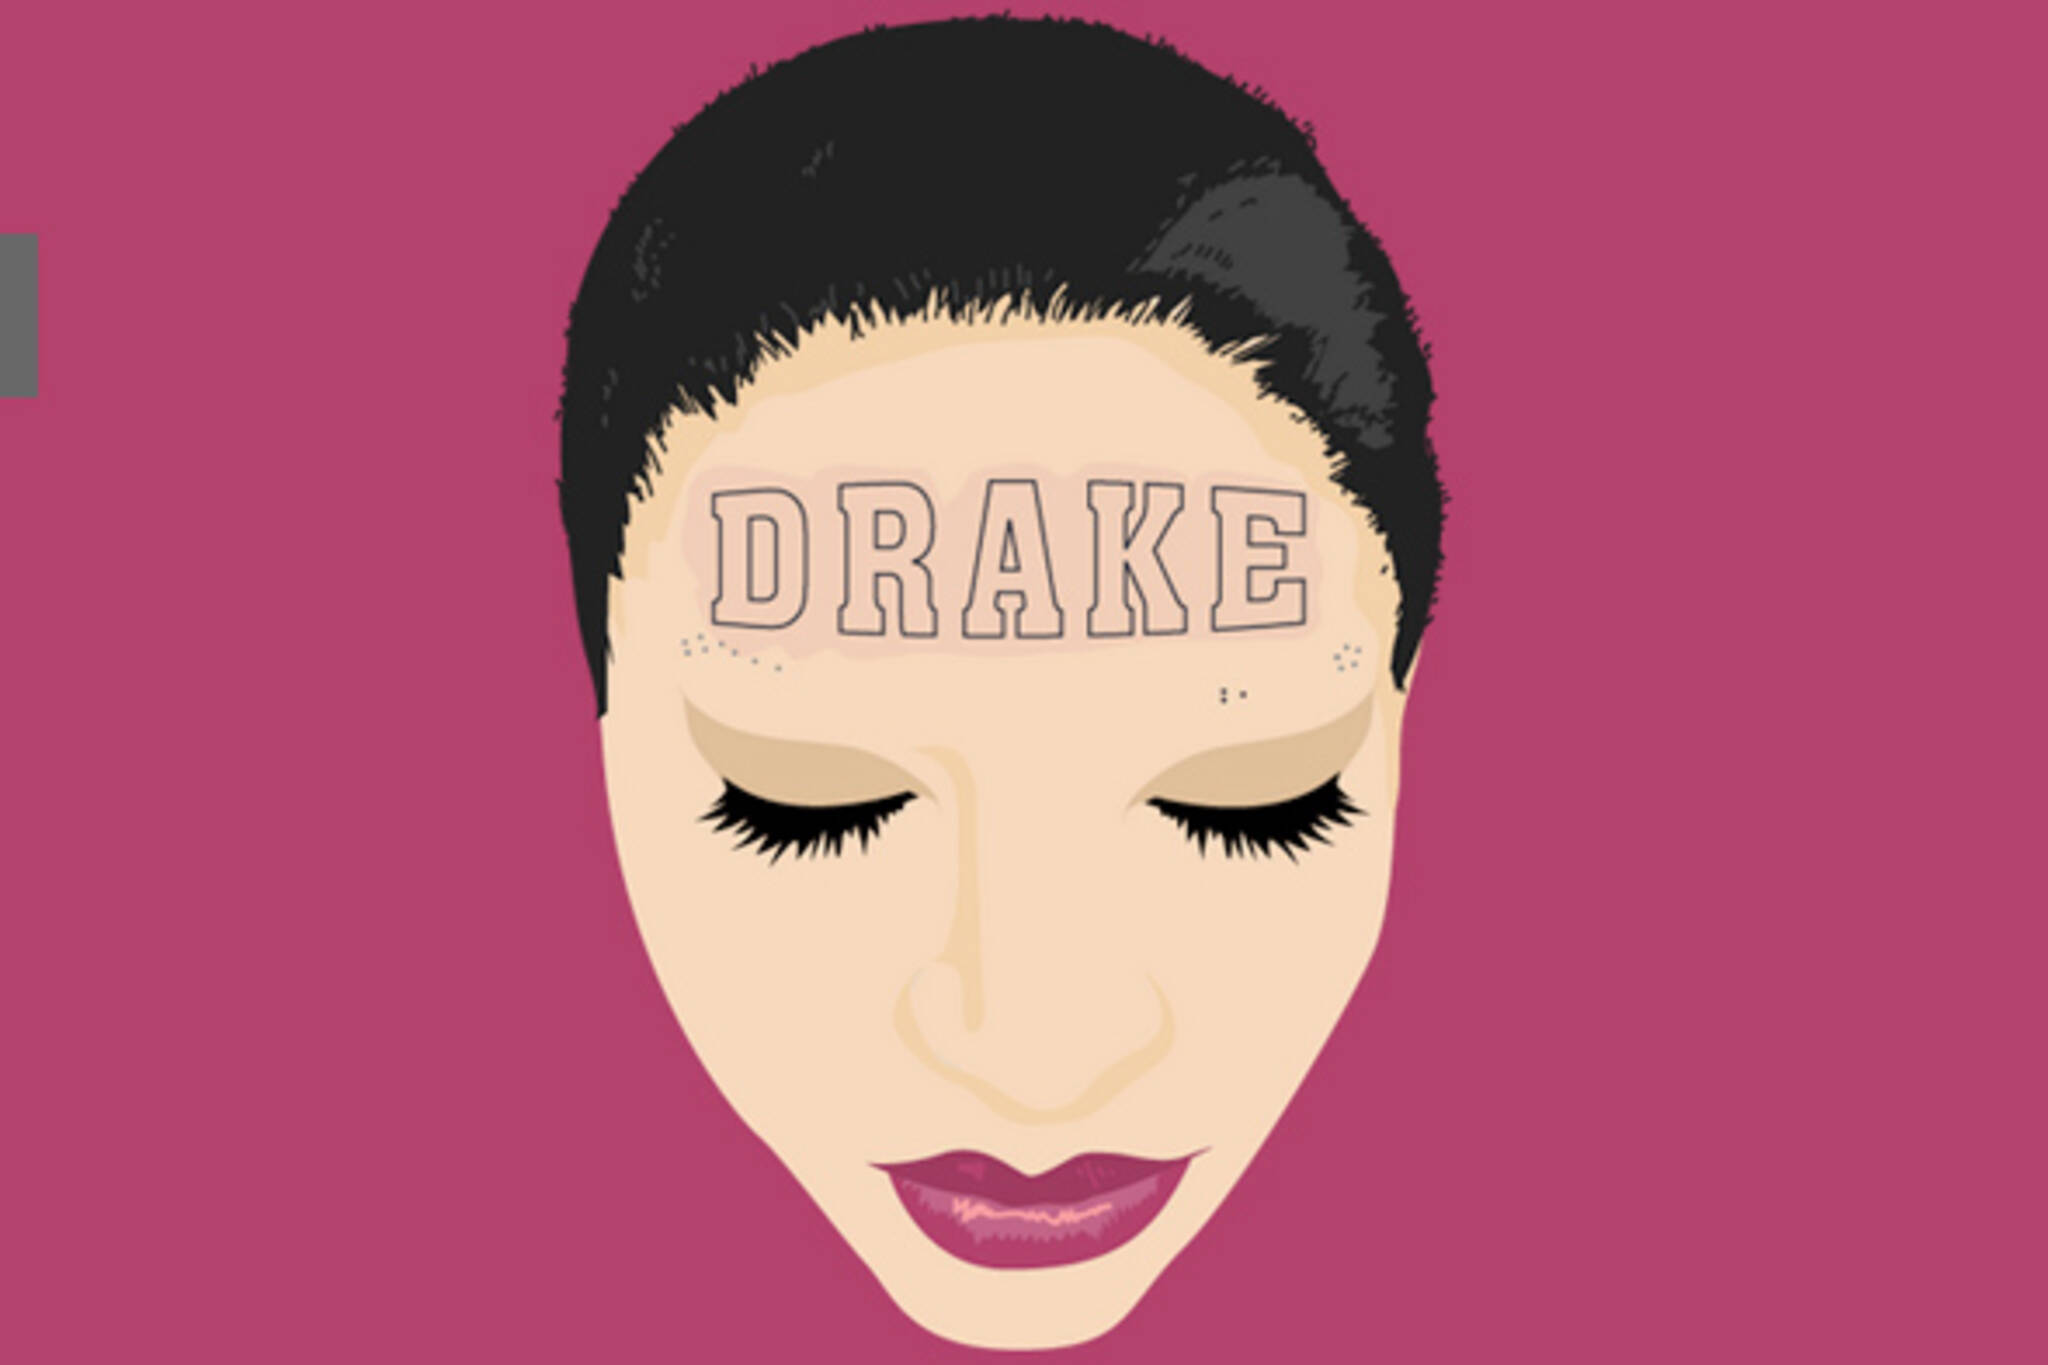 Drake website